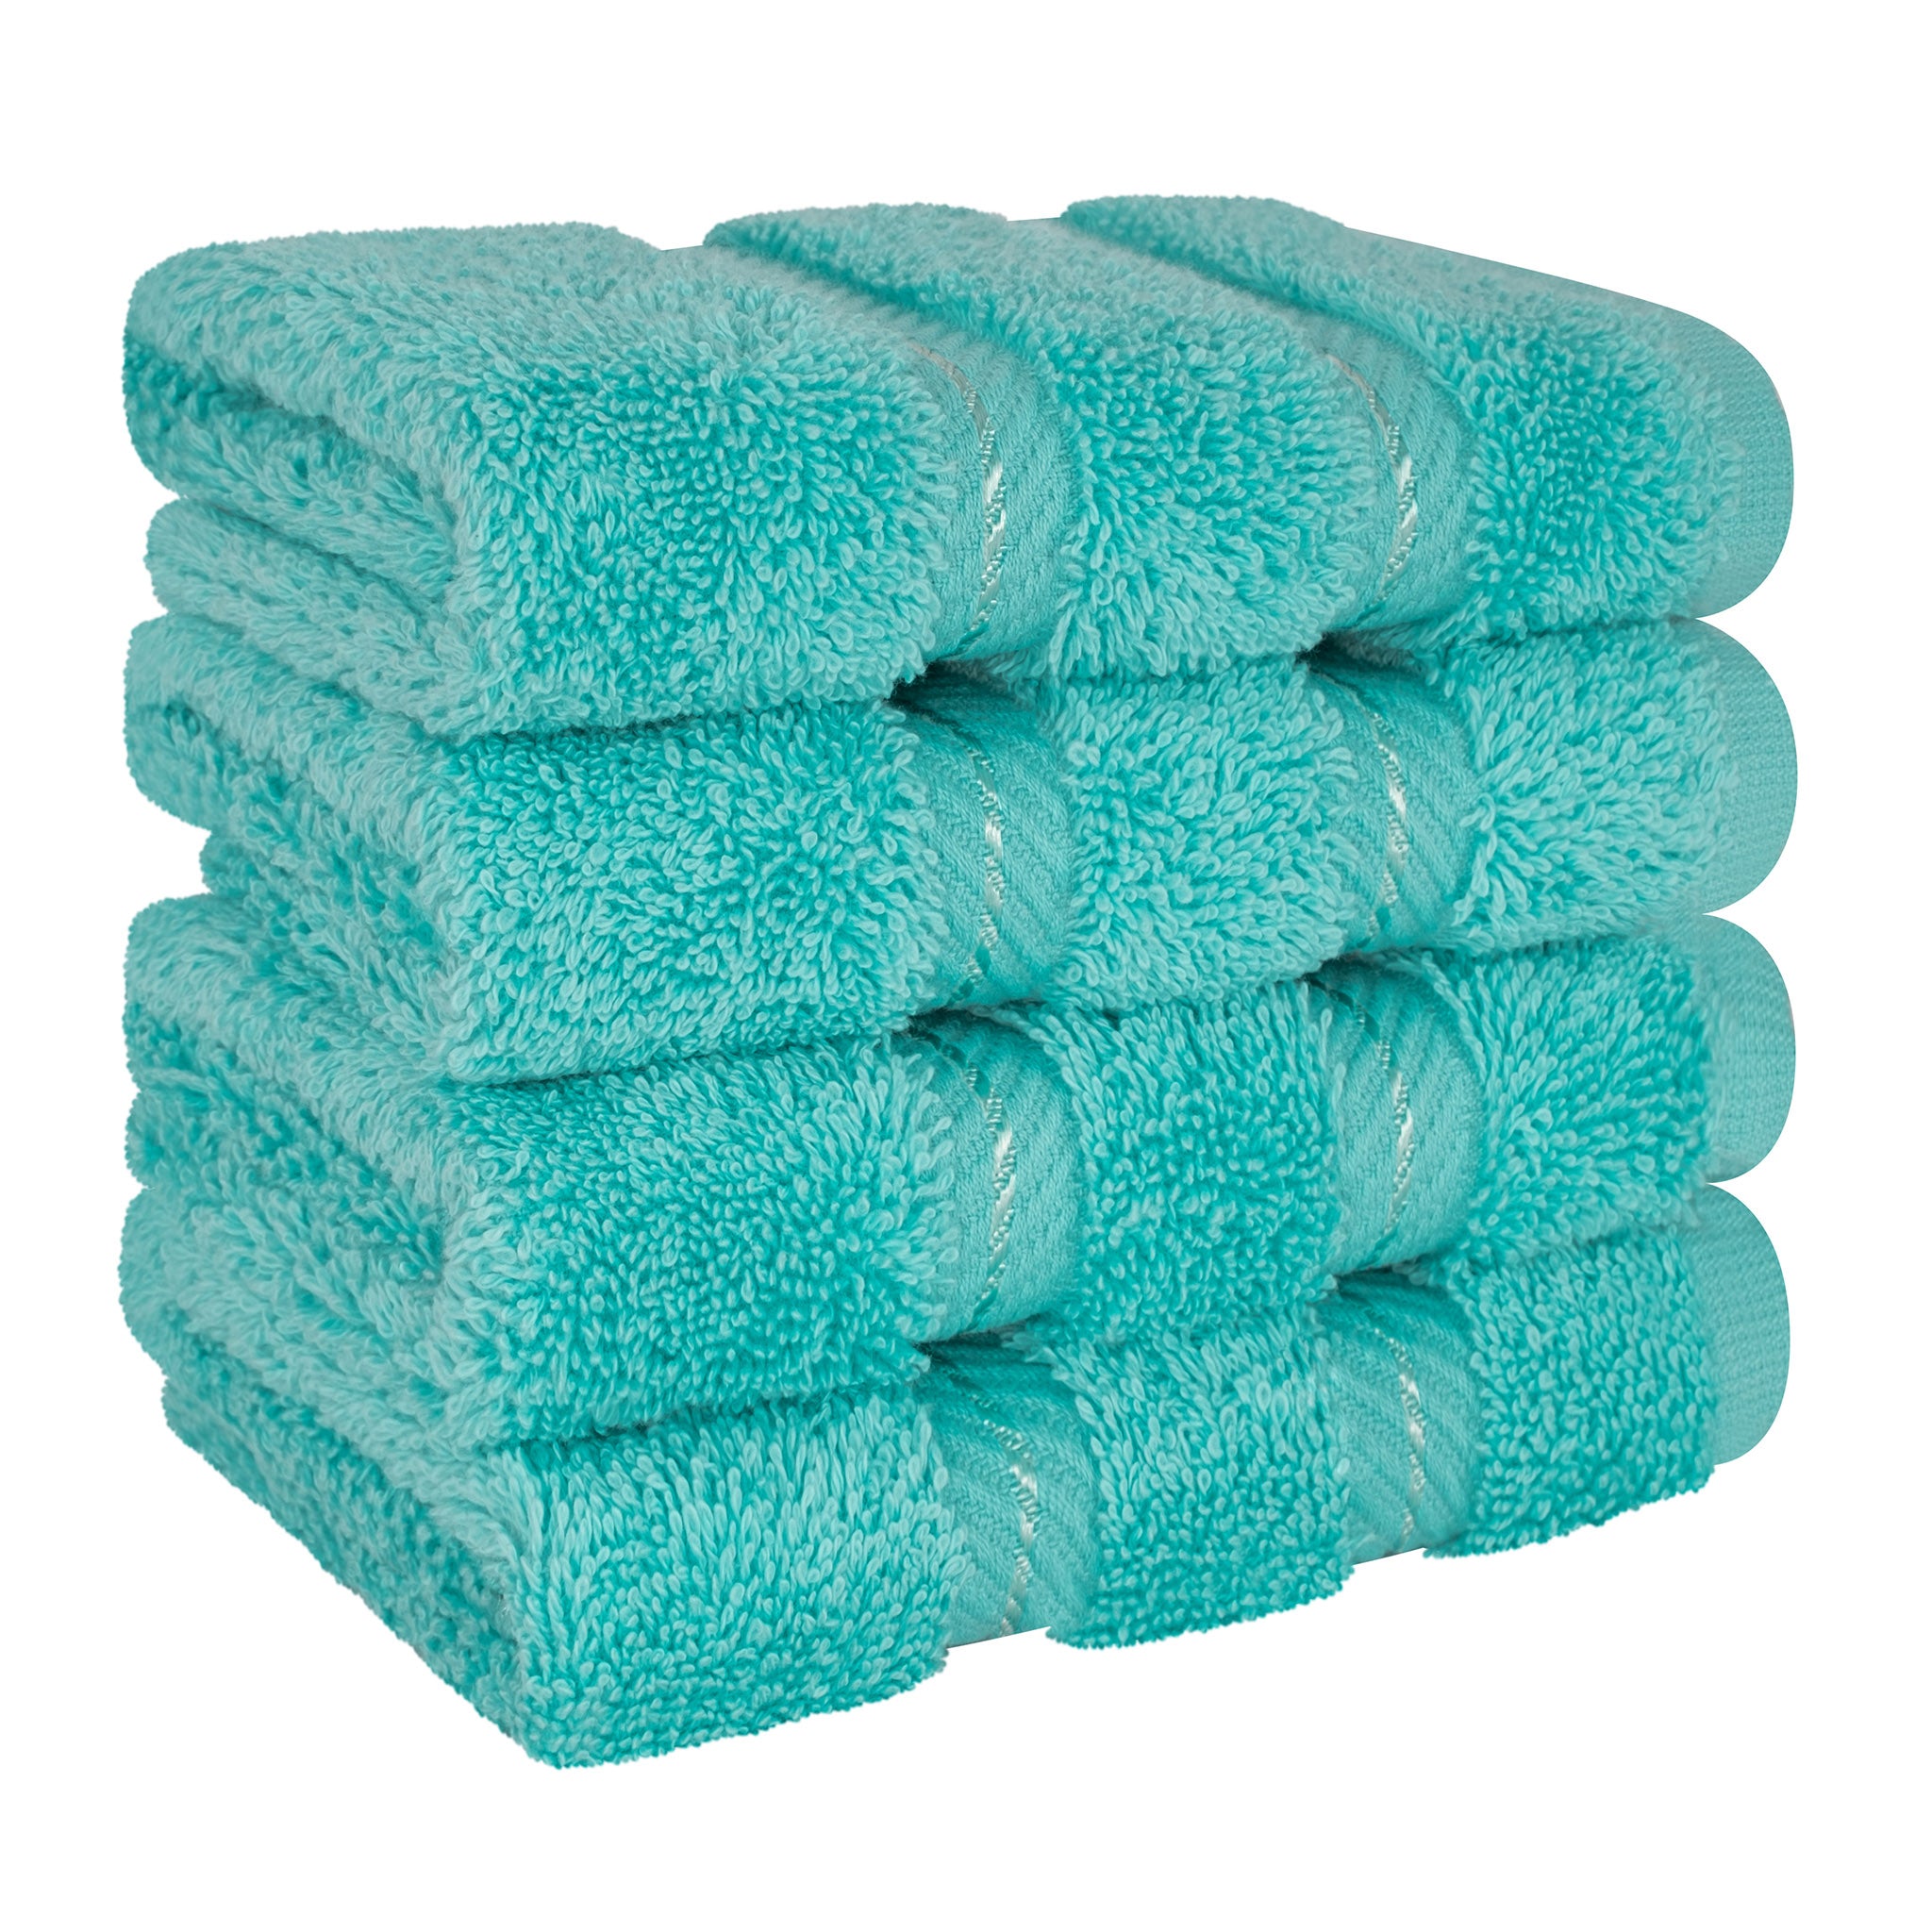 4 Piece 100% Turkish Cotton Best Washcloth Towel Set